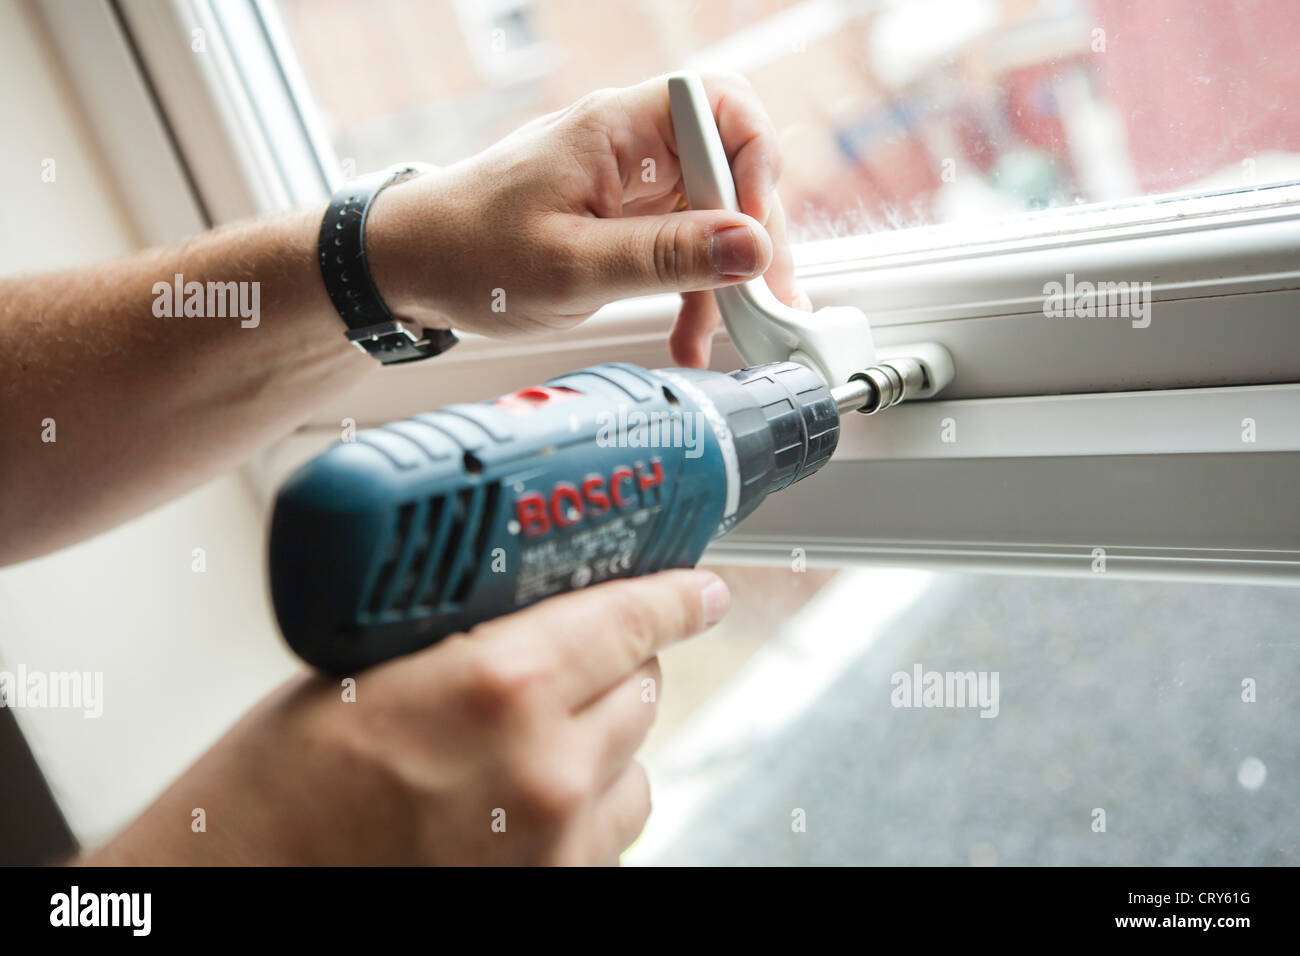 Un ouvrier utilise une perceuse Bosch GSR14. pour visser un écrou de blocage sur la poignée d'une fenêtre Banque D'Images